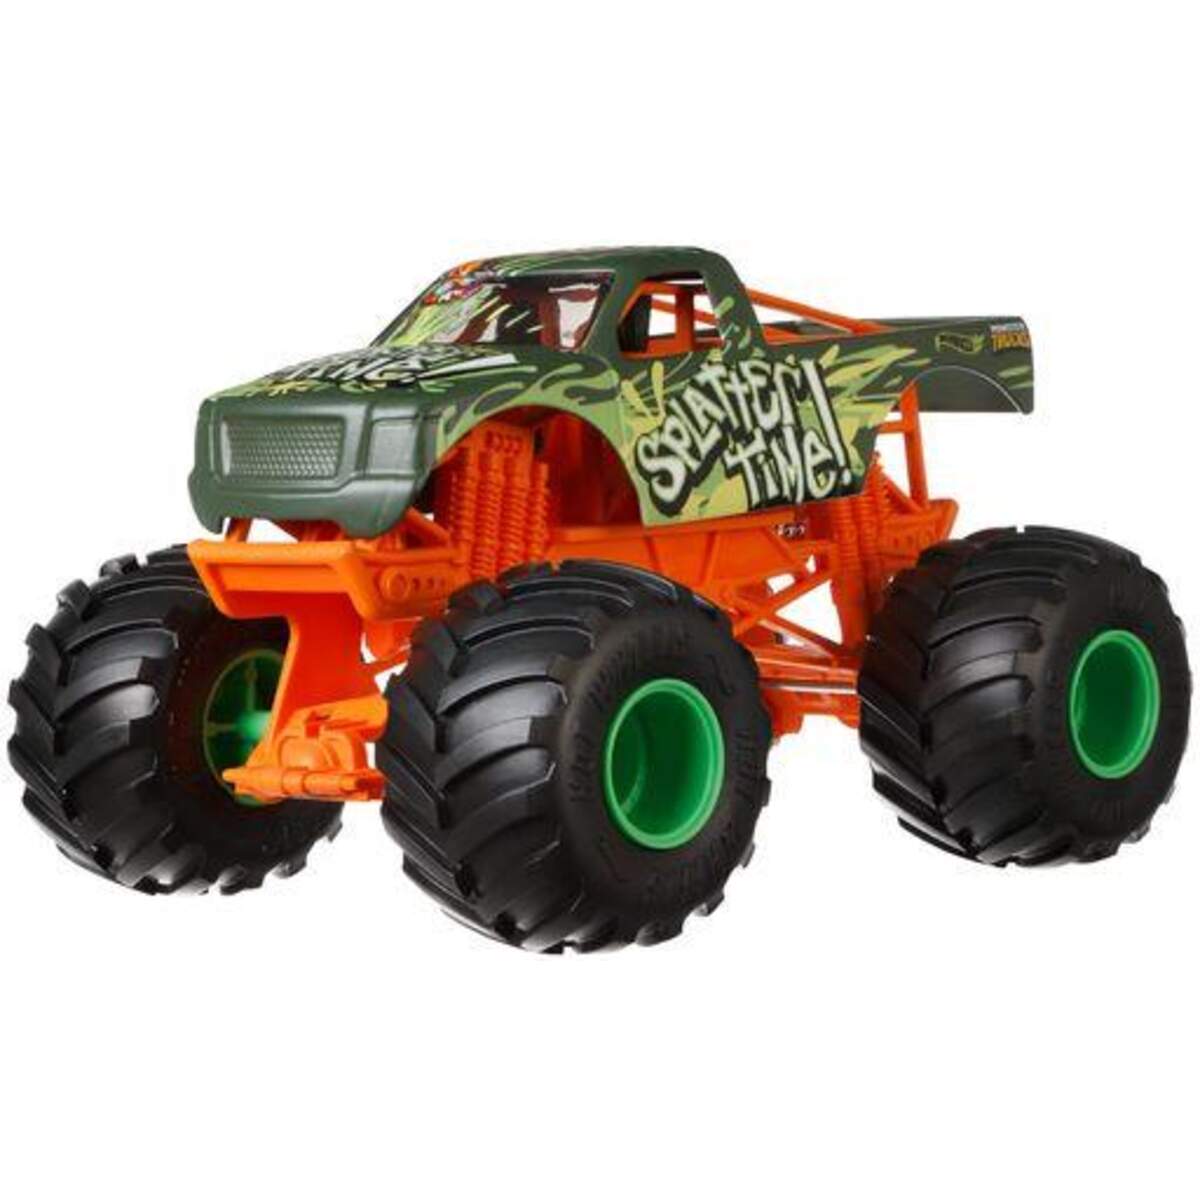 Mattel Hot Wheels Monster Trucks Die Cast Sortiment 1:24, 1 Stück, sortiert